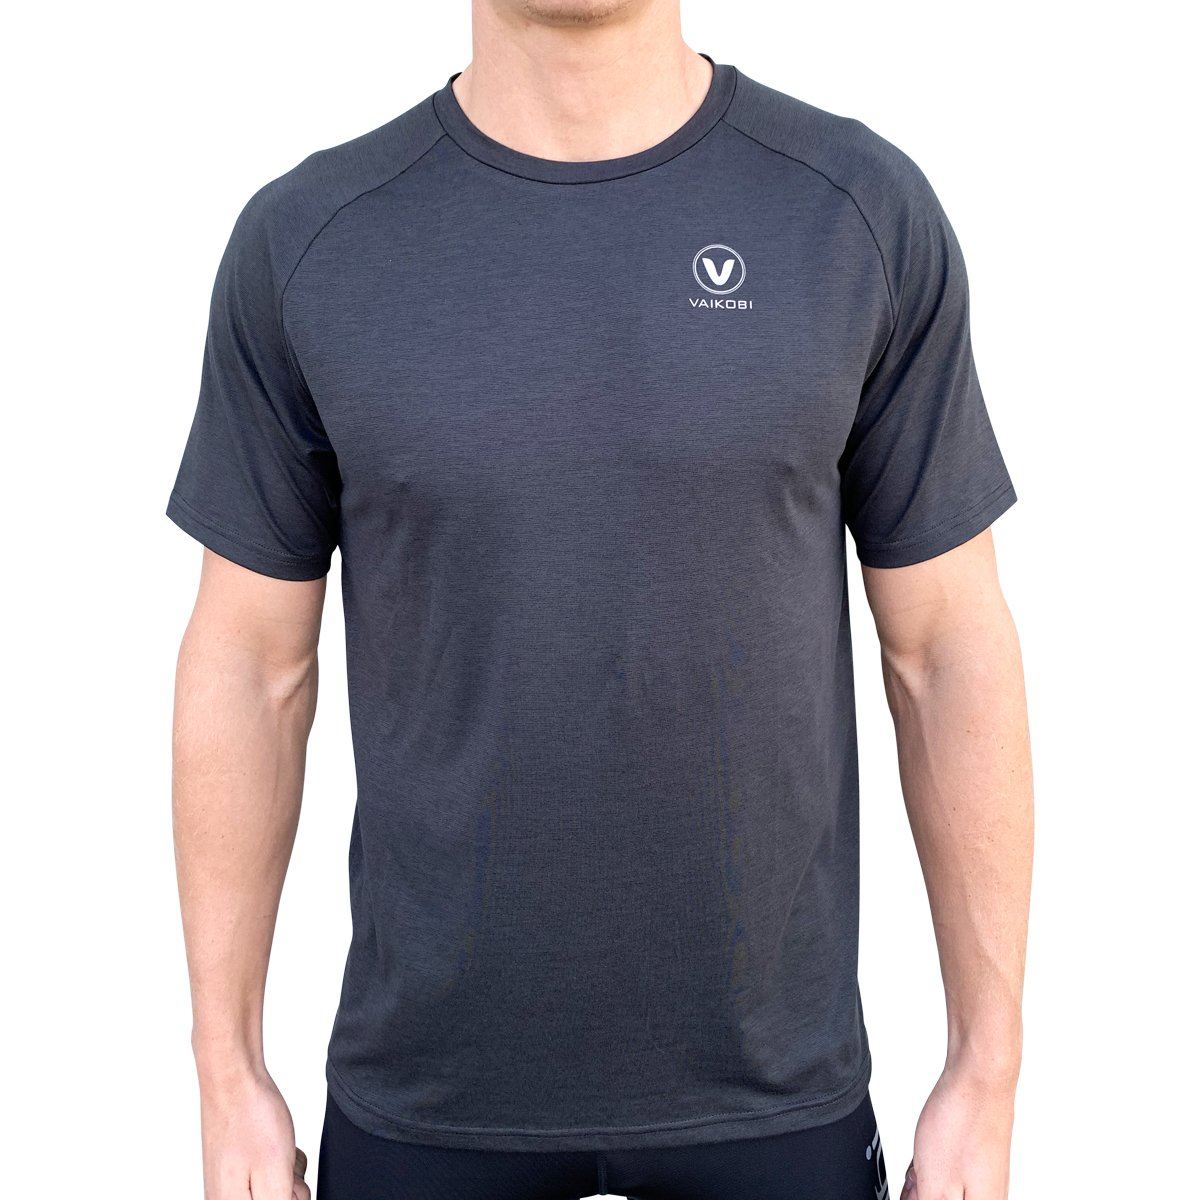 Vaikobi UV Performance Tech T-Shirt, Herren